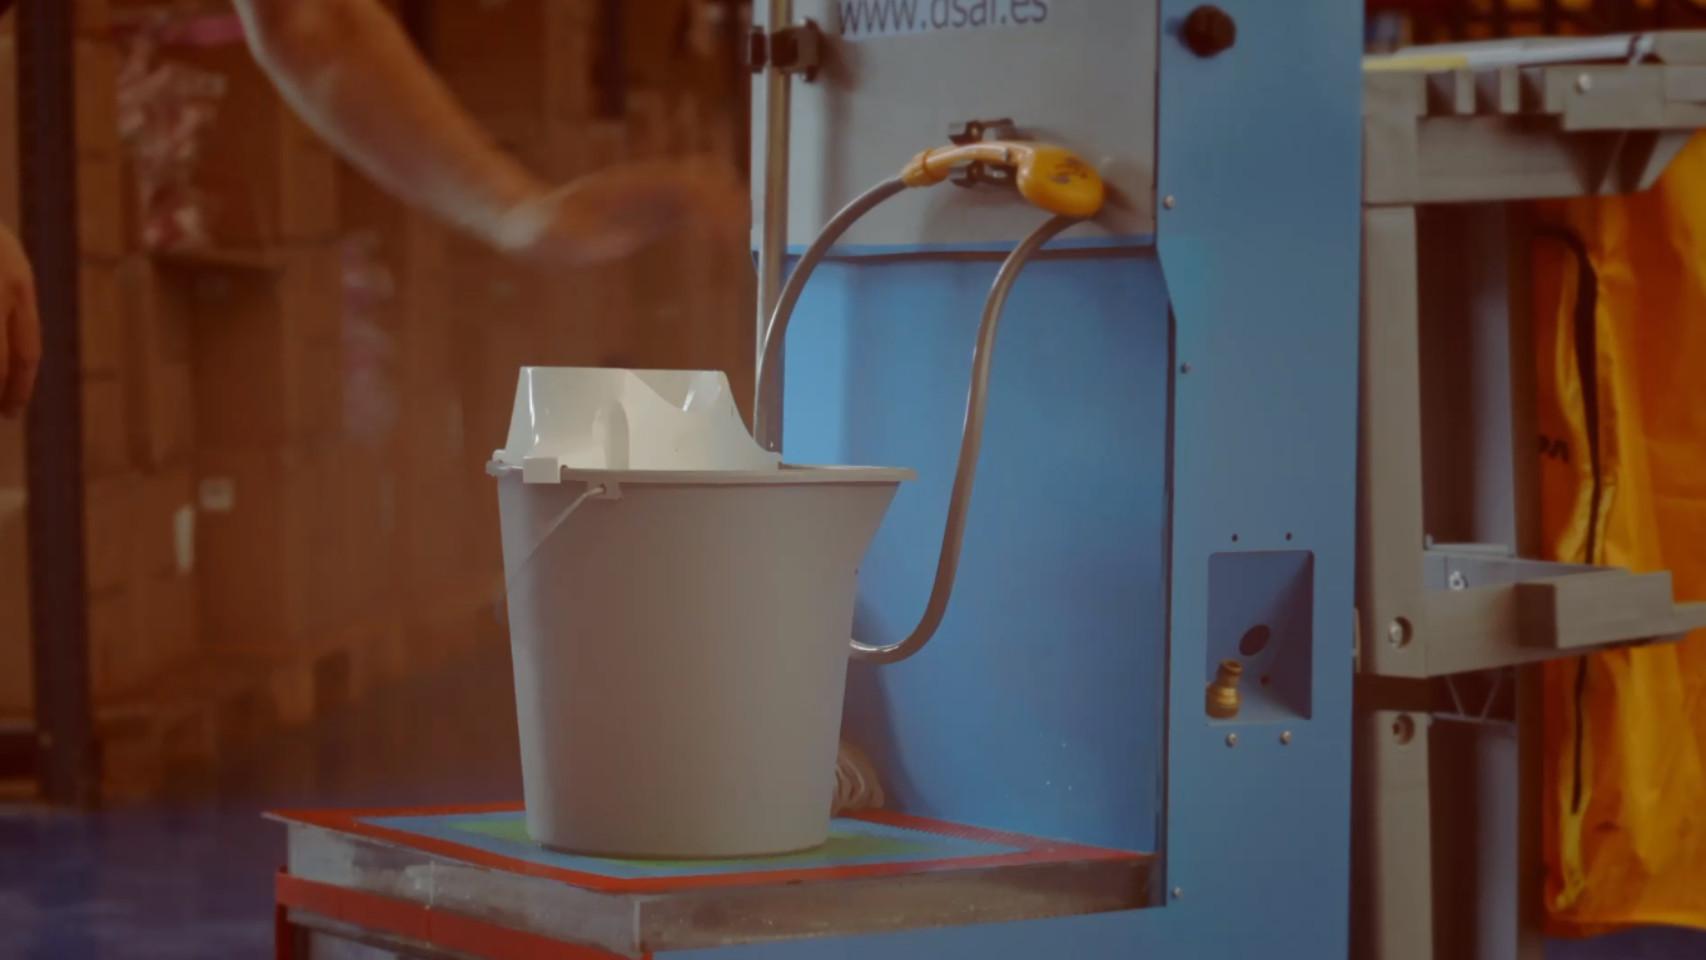 Diseño del invento que ahorra agua al limpiar.